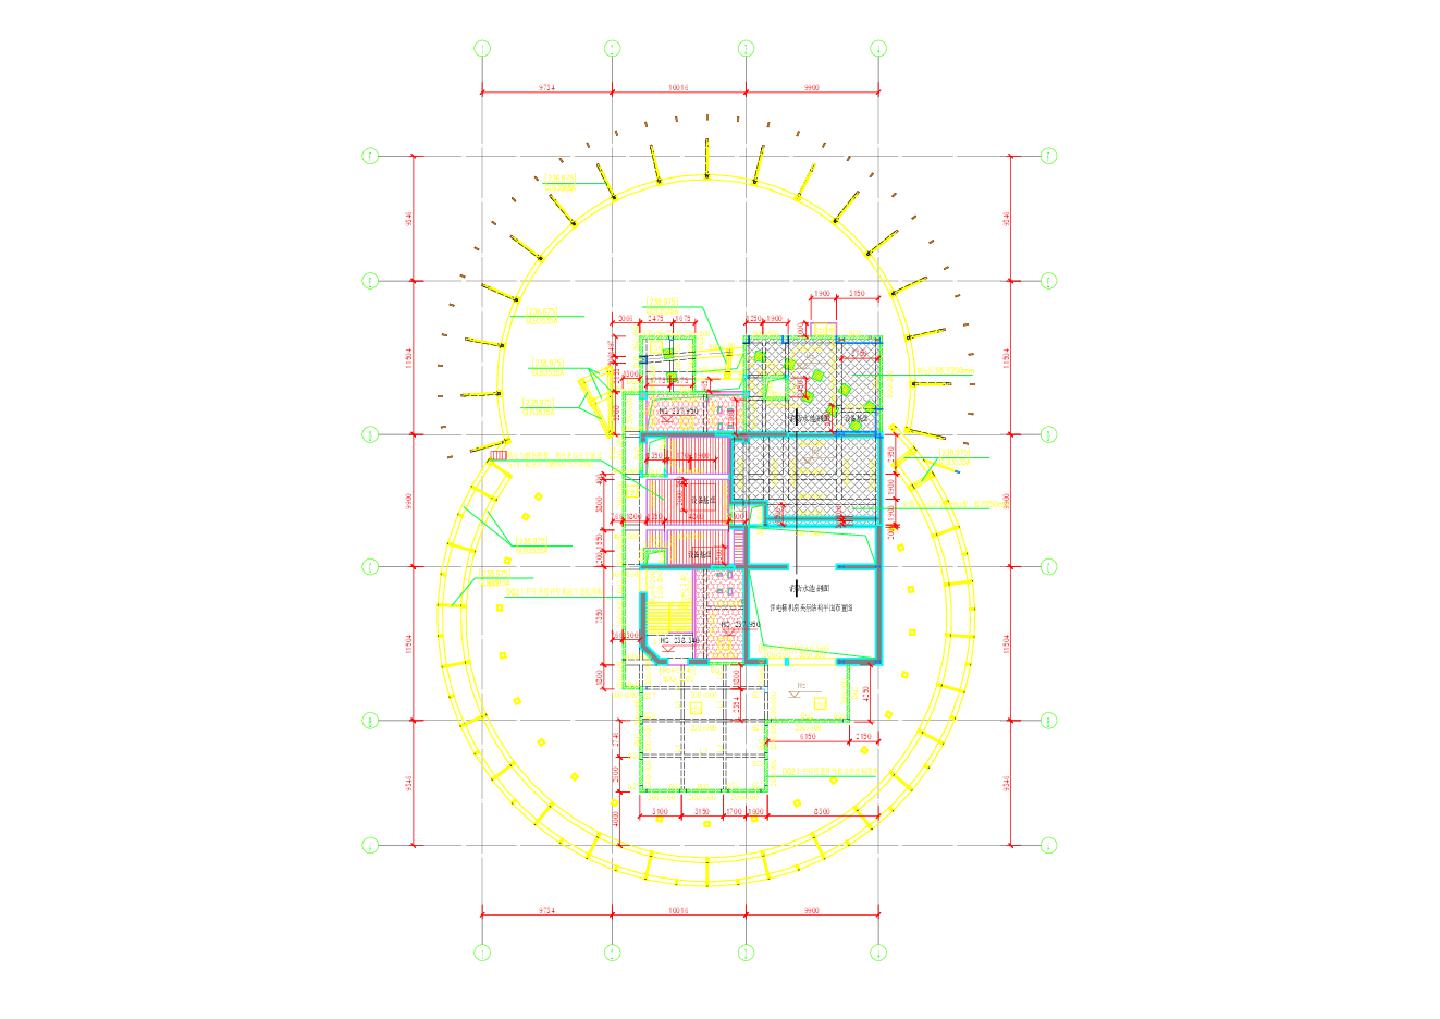 GS-242 - 机房层(R2F)结构平面布置图 CAD图